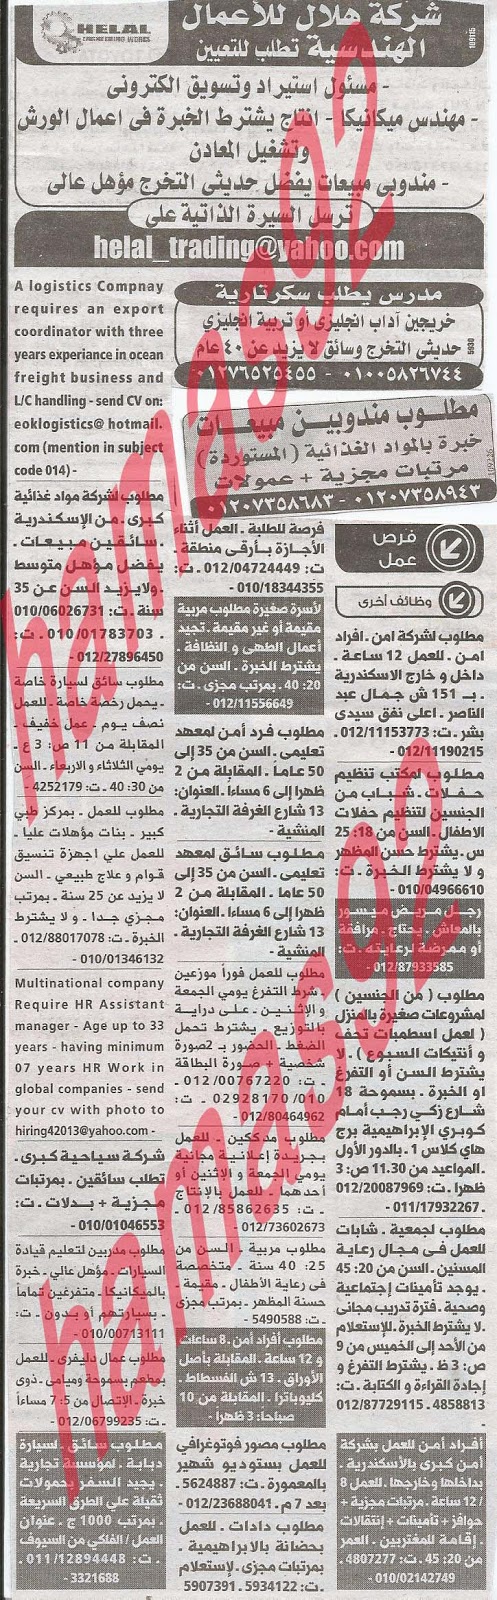 وظائف خالية فى جريدة الوسيط الاسكندرية الثلاثاء 23-04-2013 %D9%88+%D8%B3+%D8%B3+6